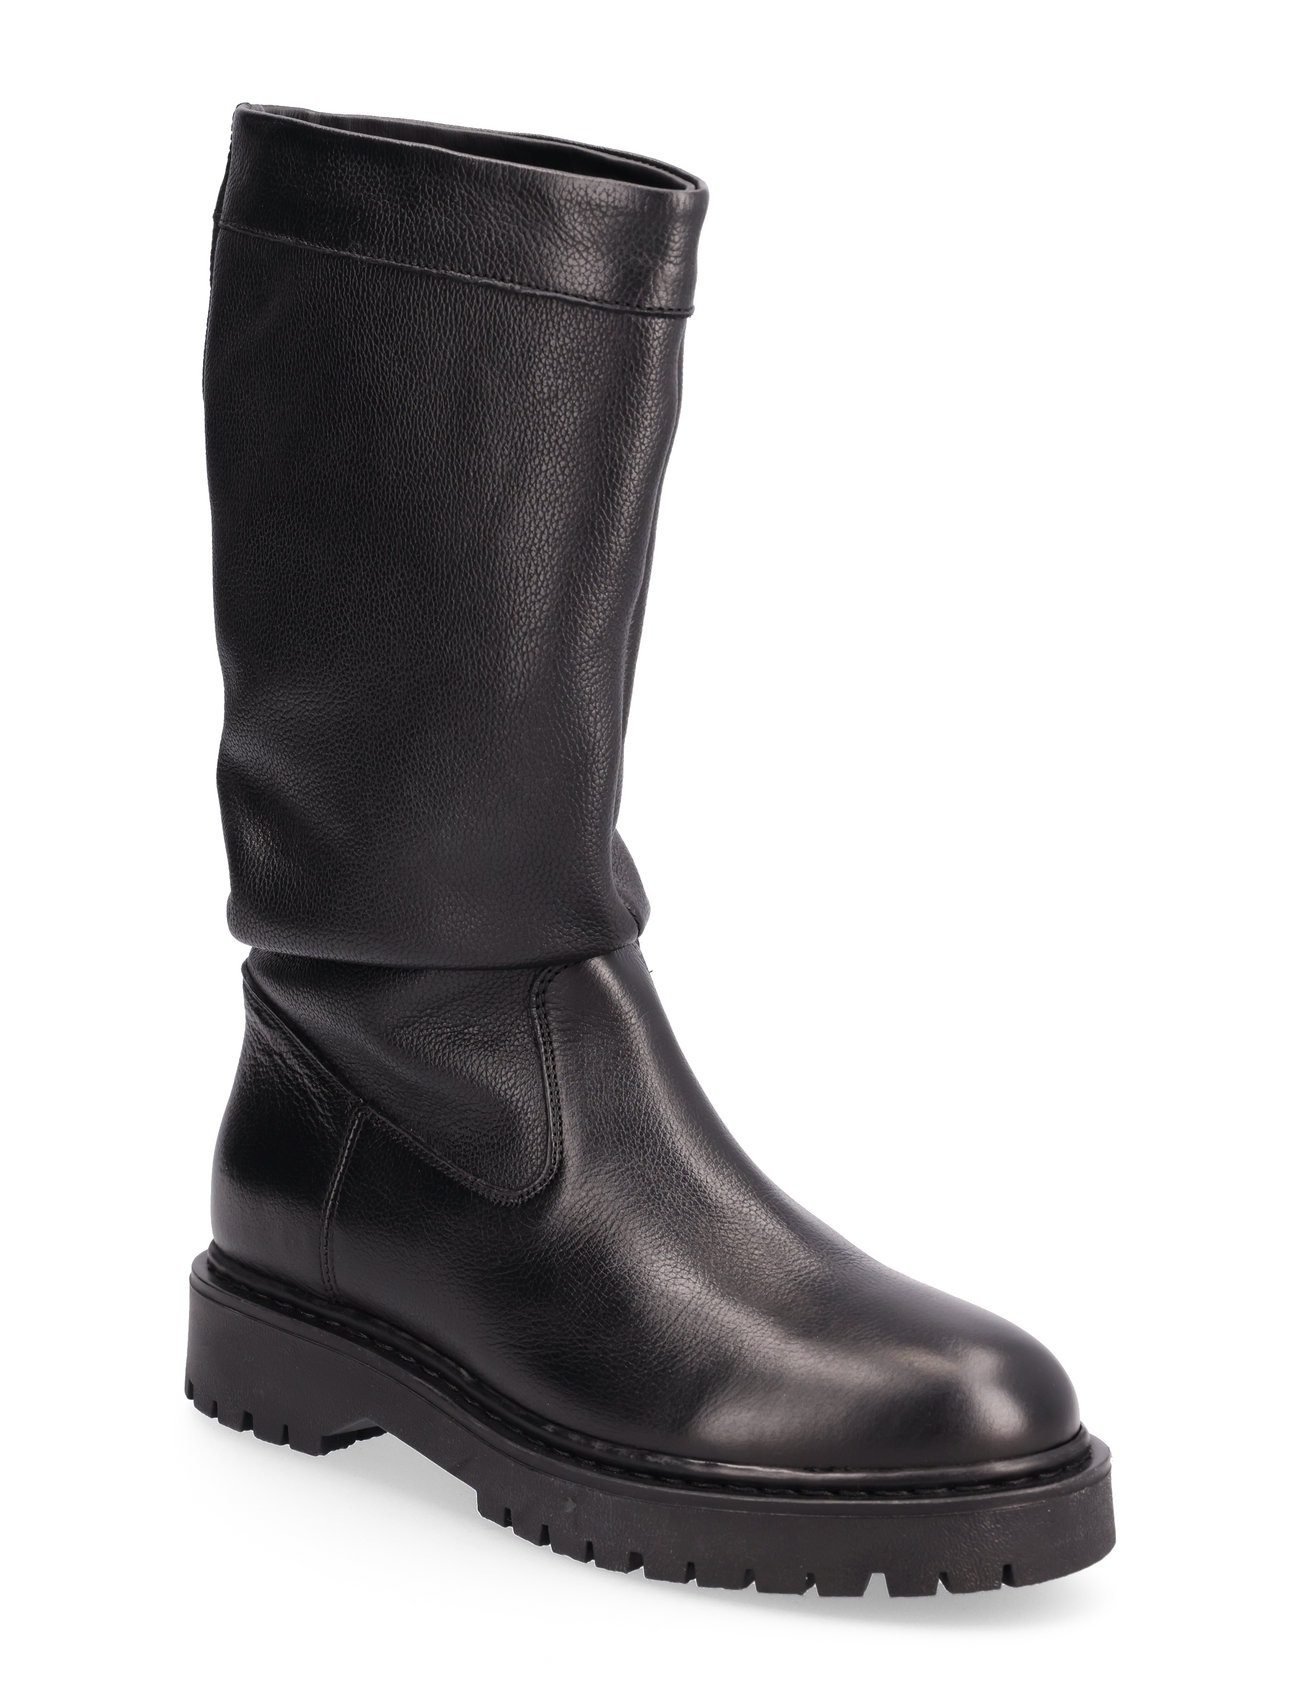 GEOX D Bleyze H - Long boots - Boozt.com